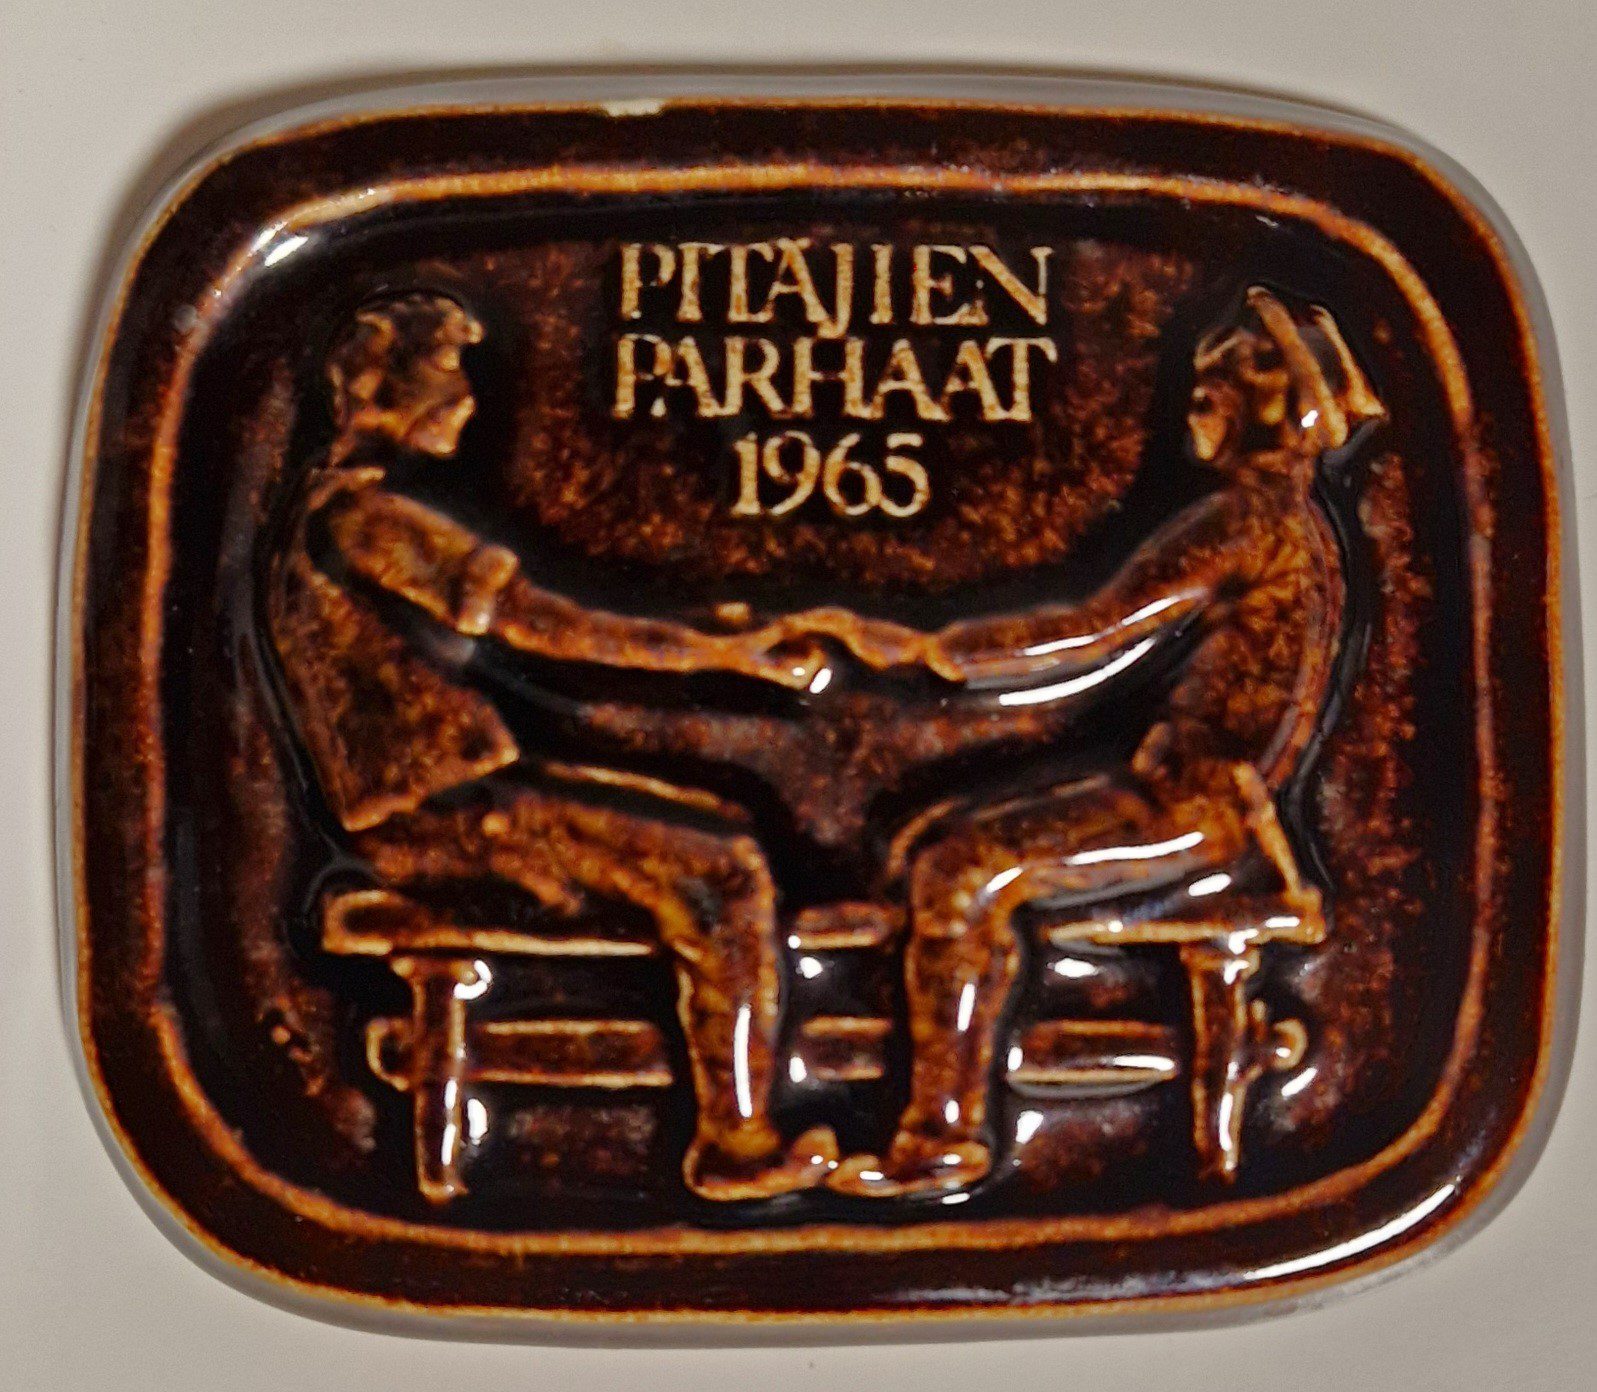 Osallistumisesta ”Pitäjien parhaat” -kilpailuun 1965 jaettiin kaikille osallistuneille joukkueille muistolaatta.